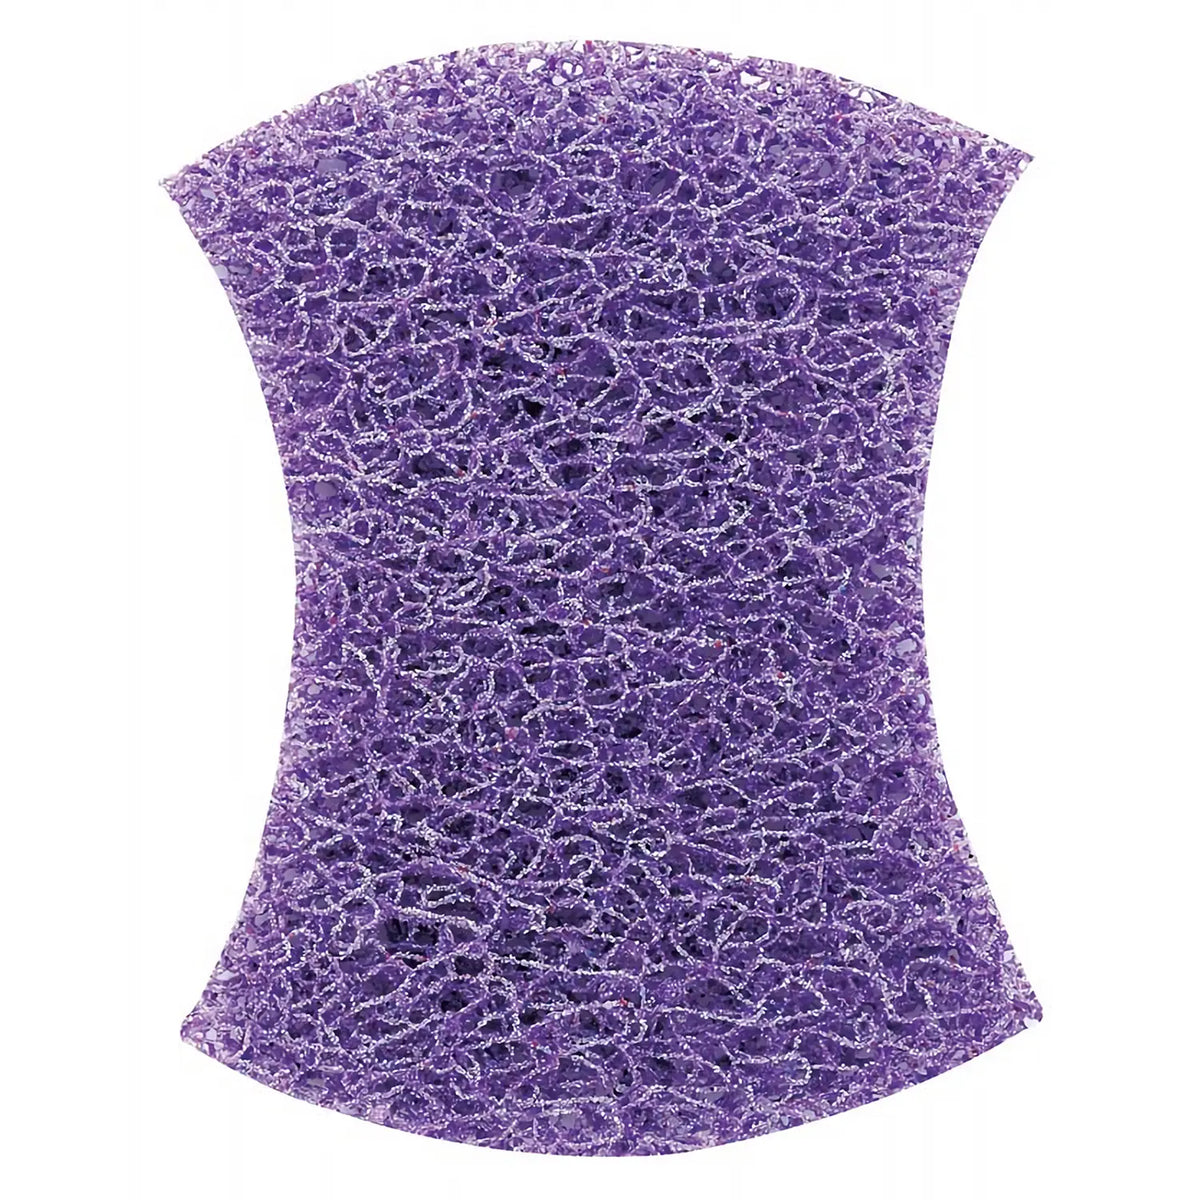 3M Scotch-Brite Nylon Non-Woven Fabric Scrubbing Scour Purple